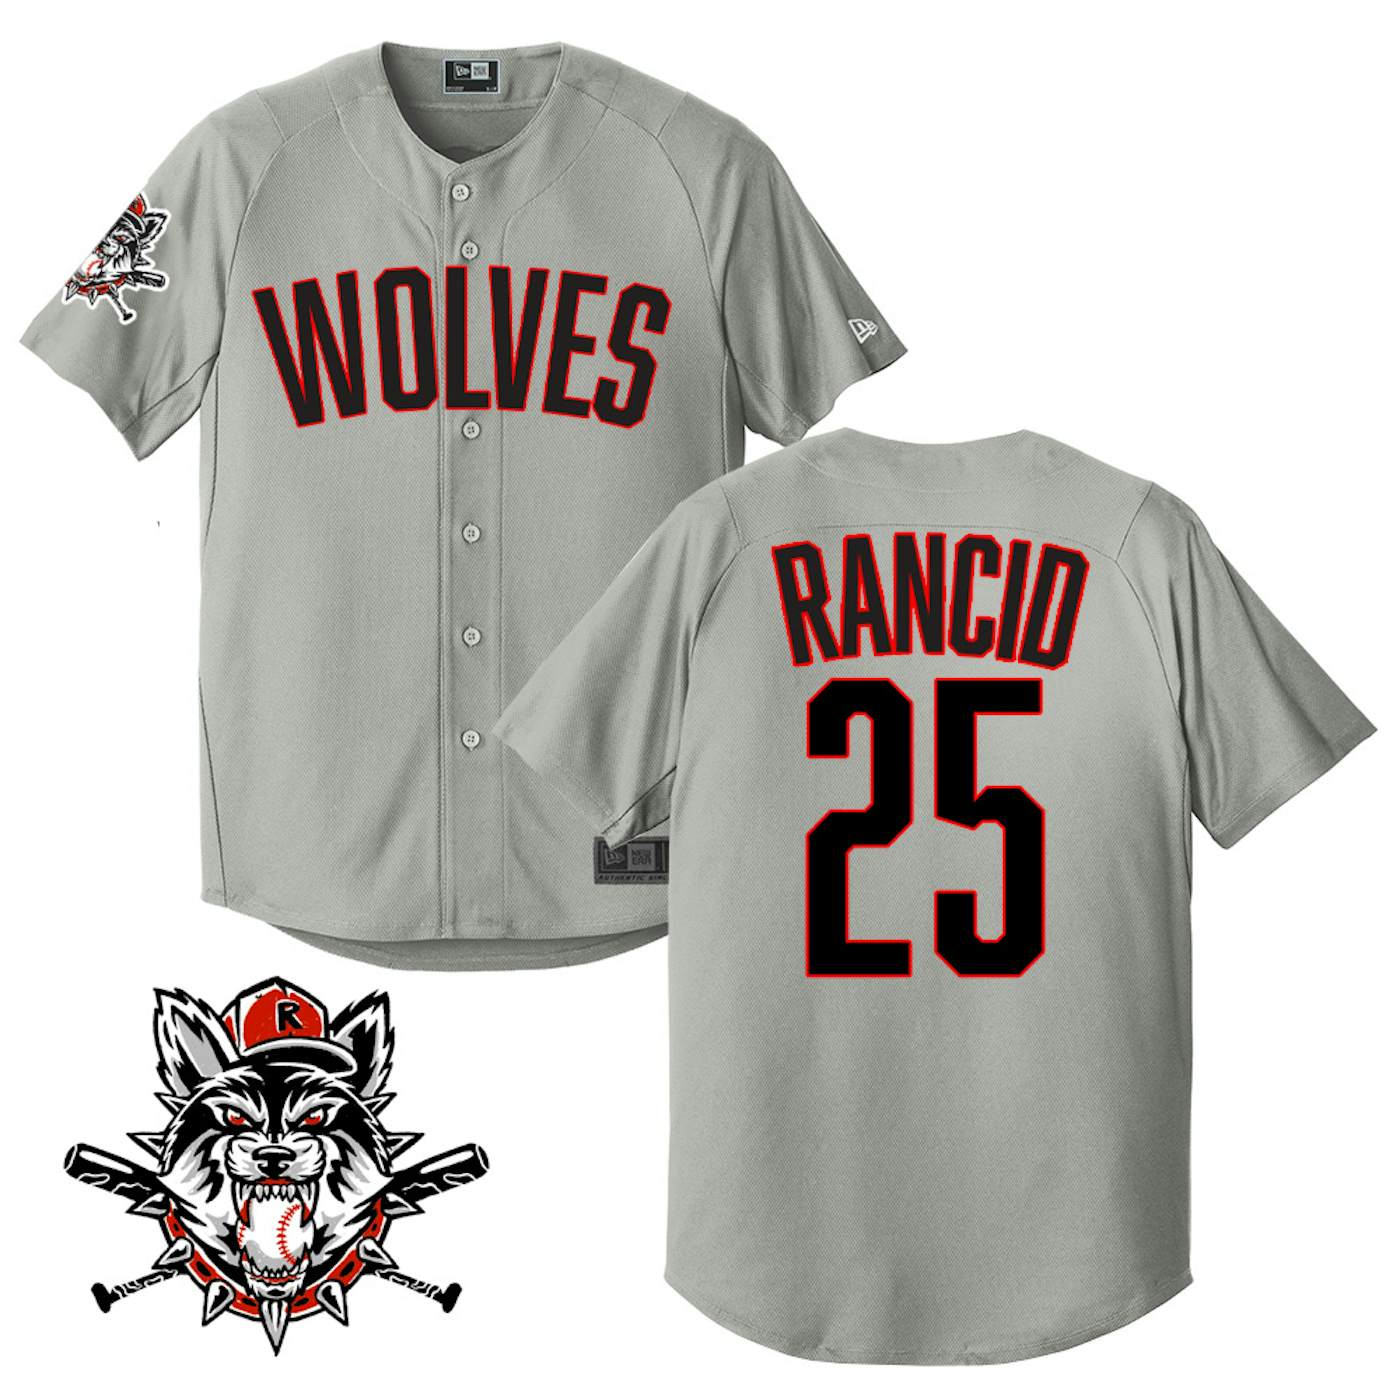 Rancid Wolves Limited-Edition Baseball Jersey (Grey)